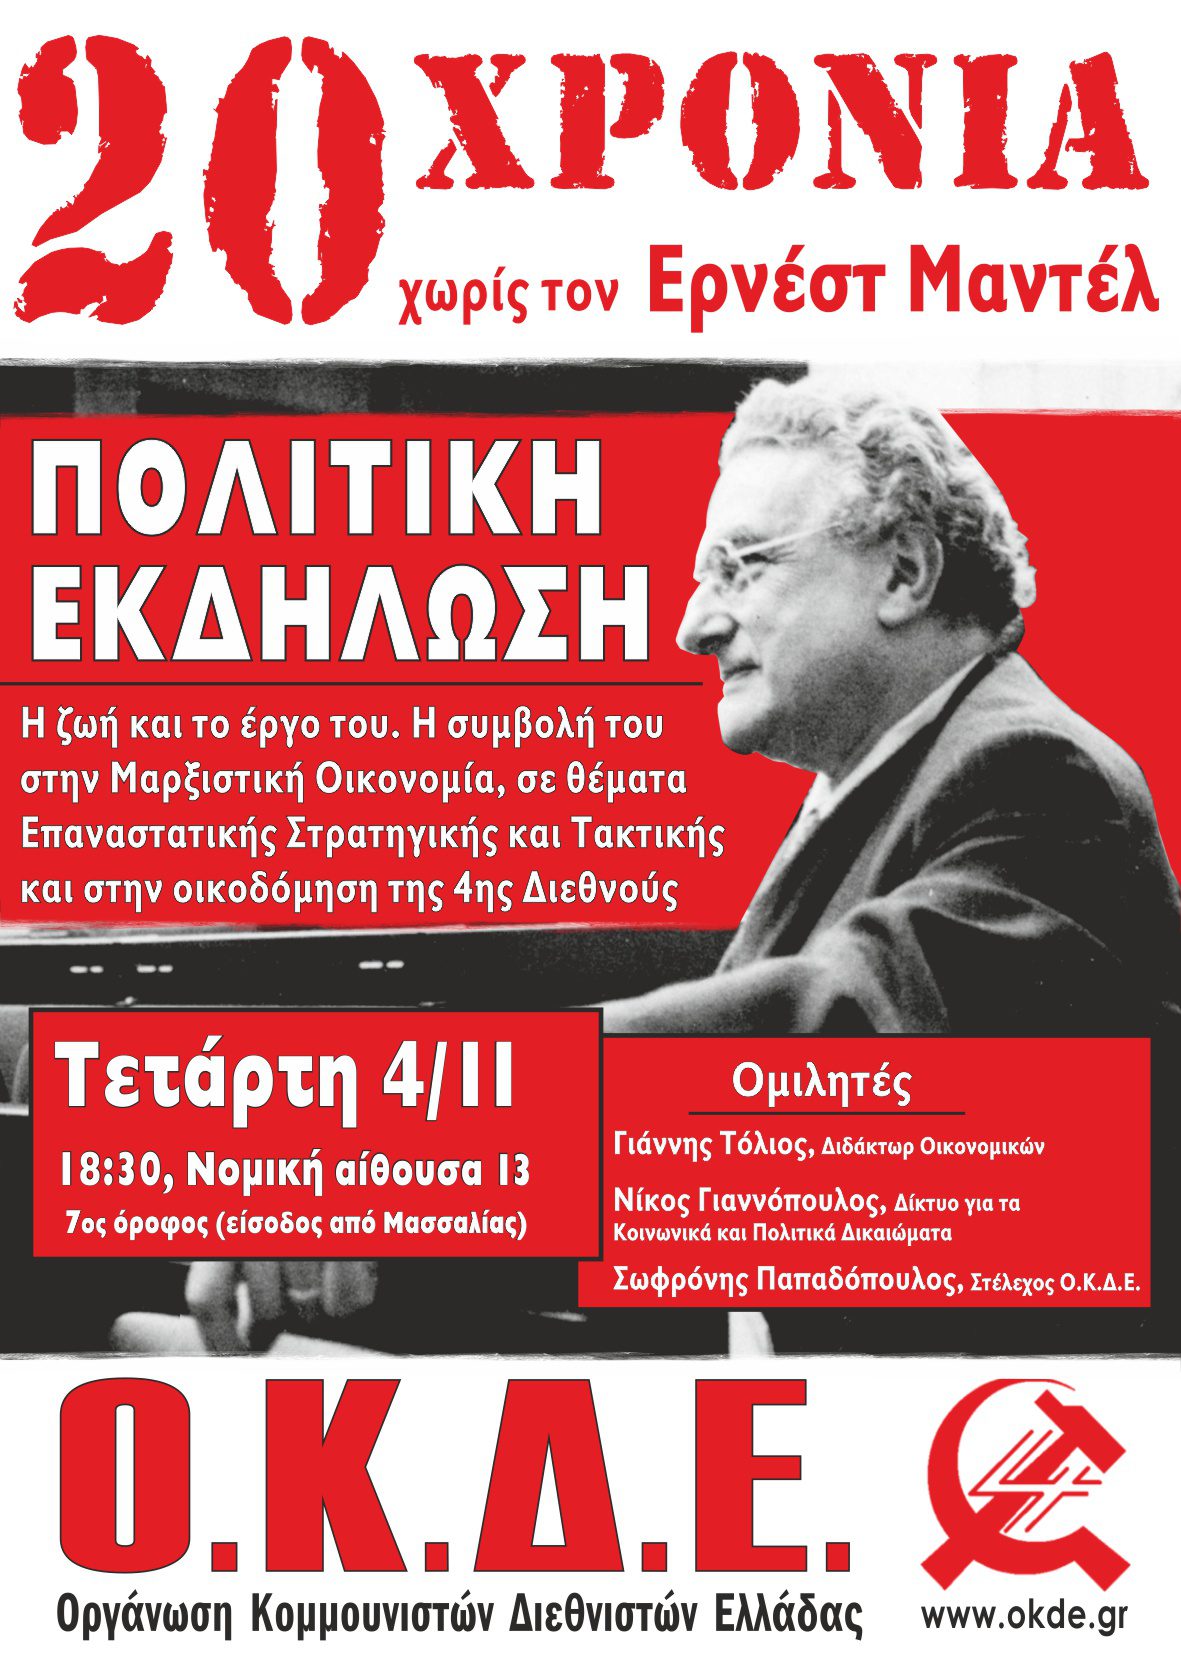 Αθήνα, Τετάρτη 4 Νοέμβρη, Πολιτική εκδήλωση της ΟΚΔΕ: 20 χρόνια χωρίς τον Ερνέστ Μαντέλ